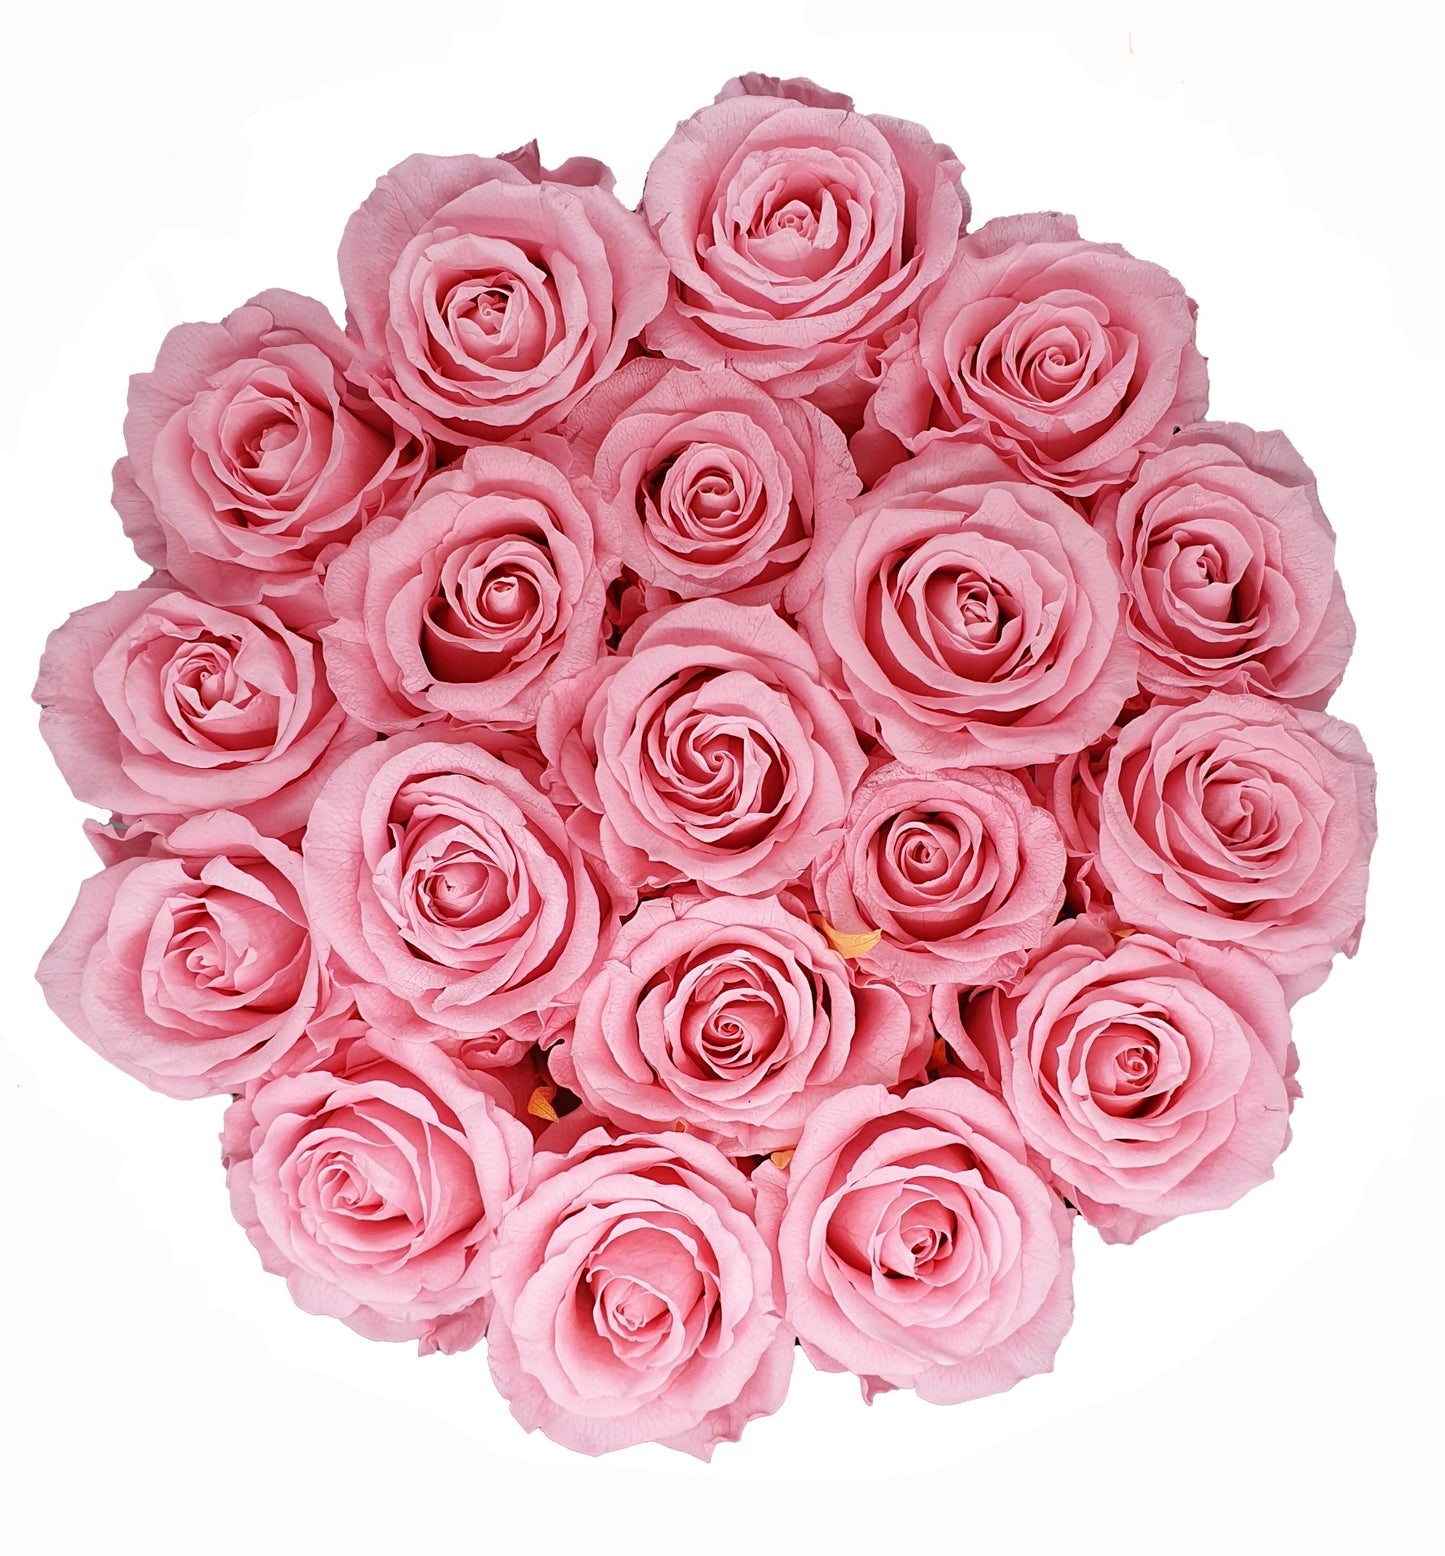 Flowerbox de Rosas Preservadas Cor de Rosa com Bombons Ferrero Rocher®